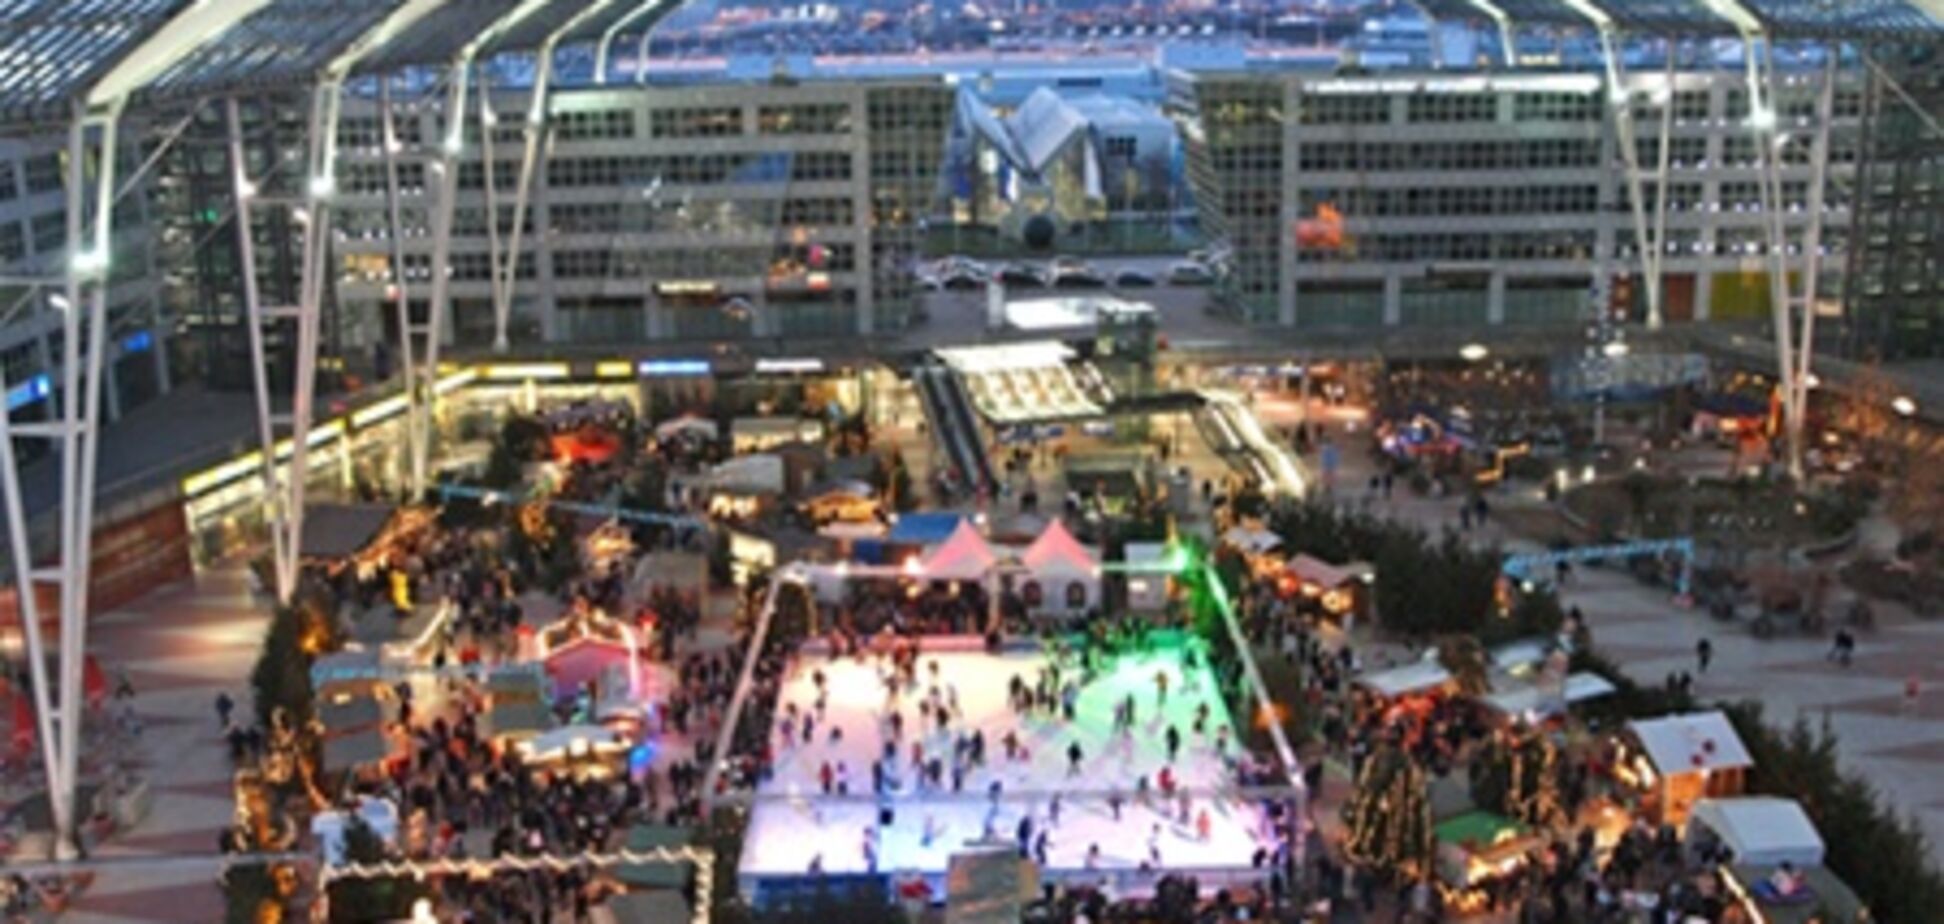 Рождественский рынок и каток в аэропорту Мюнхена